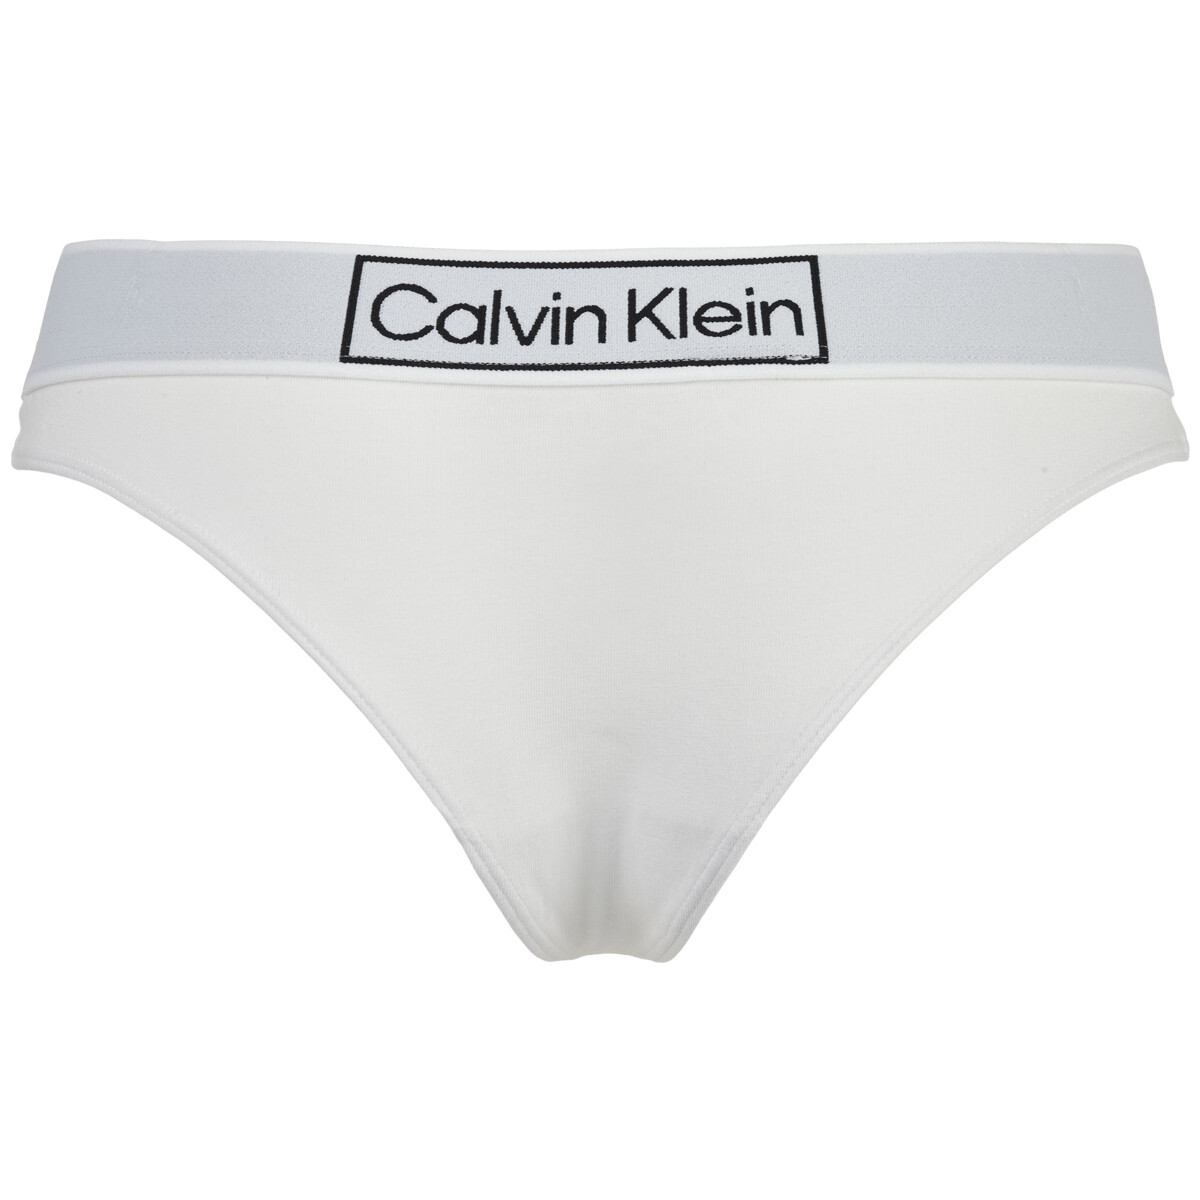 Billede af Calvin Klein G-streng, Farve: Hvid, Størrelse: XS, Dame